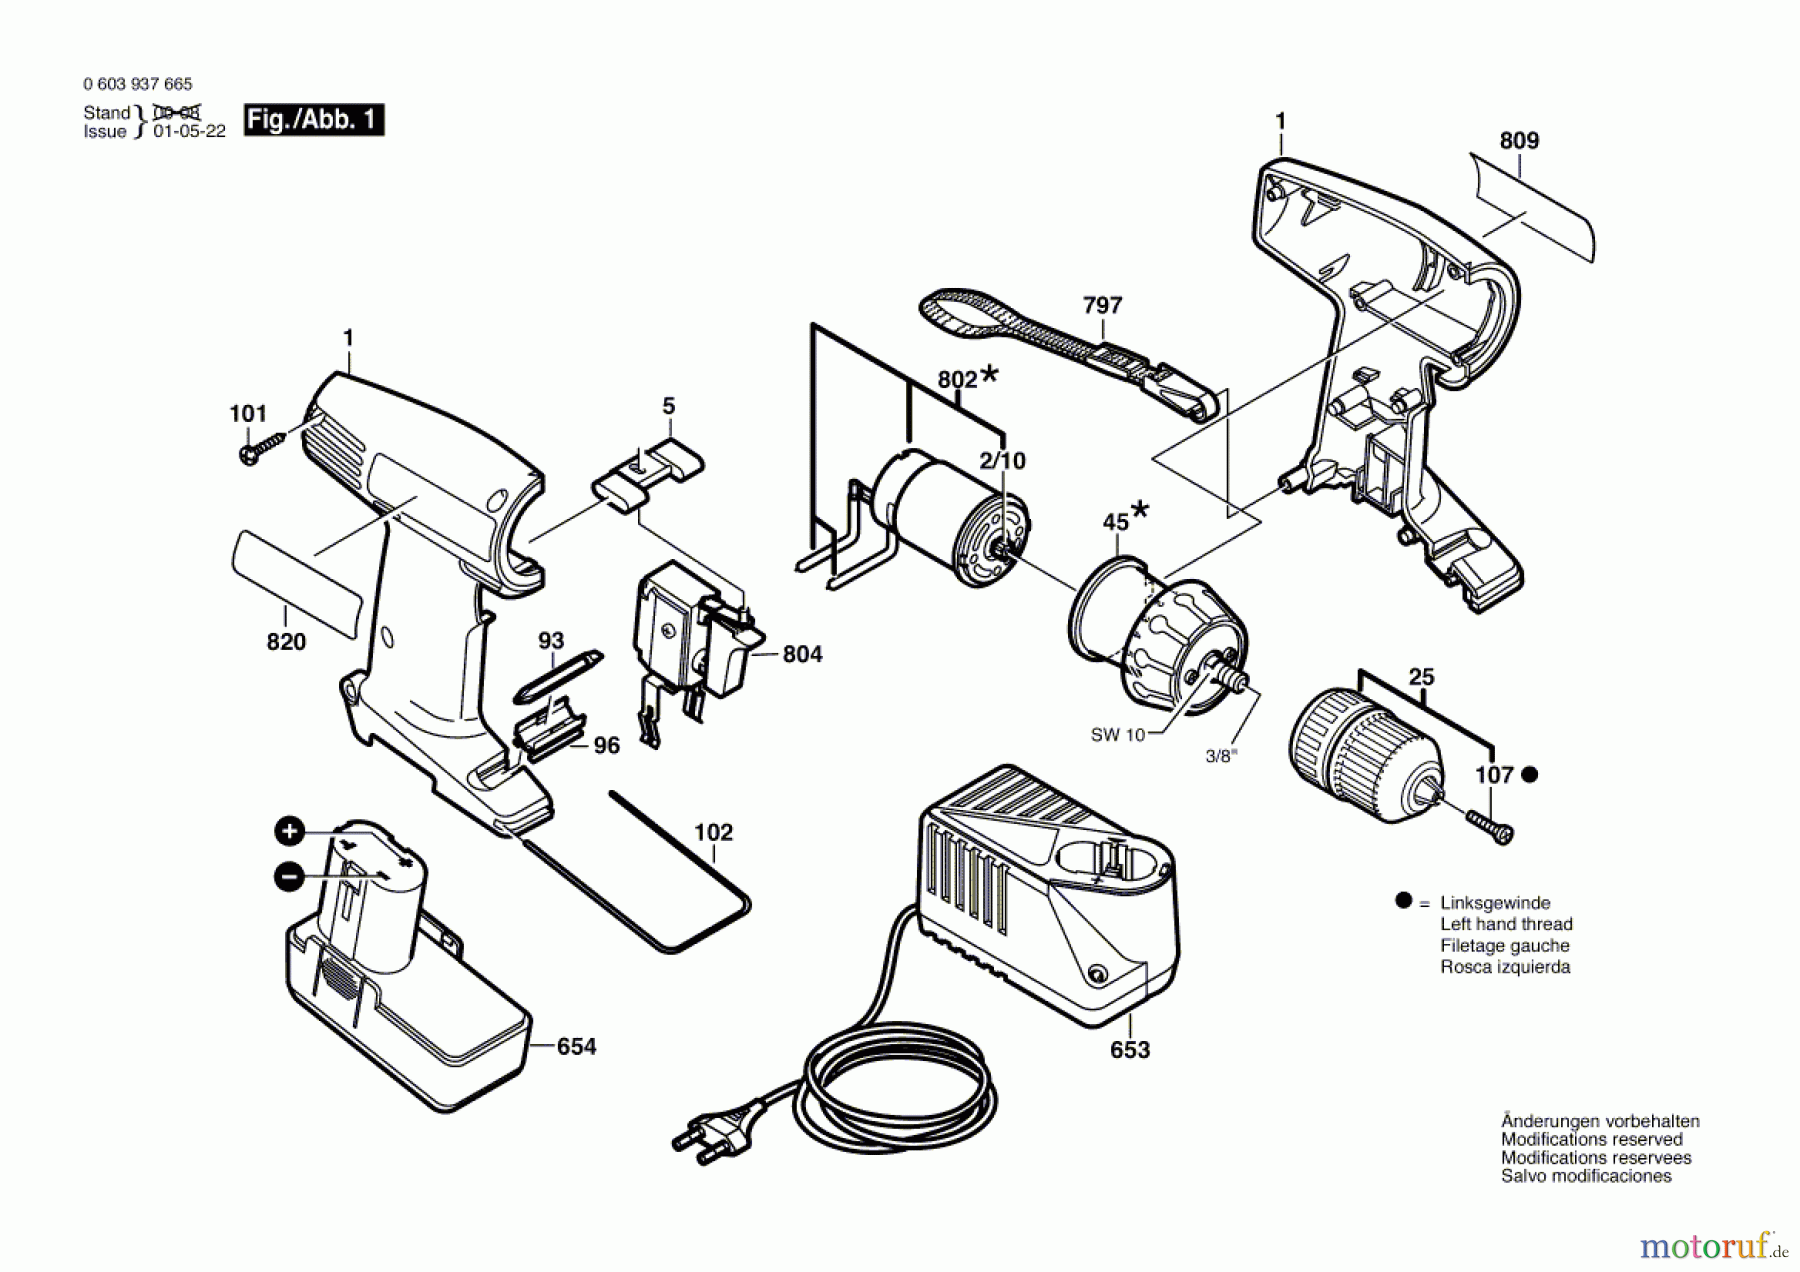  Bosch Akku Werkzeug Akku-Schrauber PSR 96 Seite 1